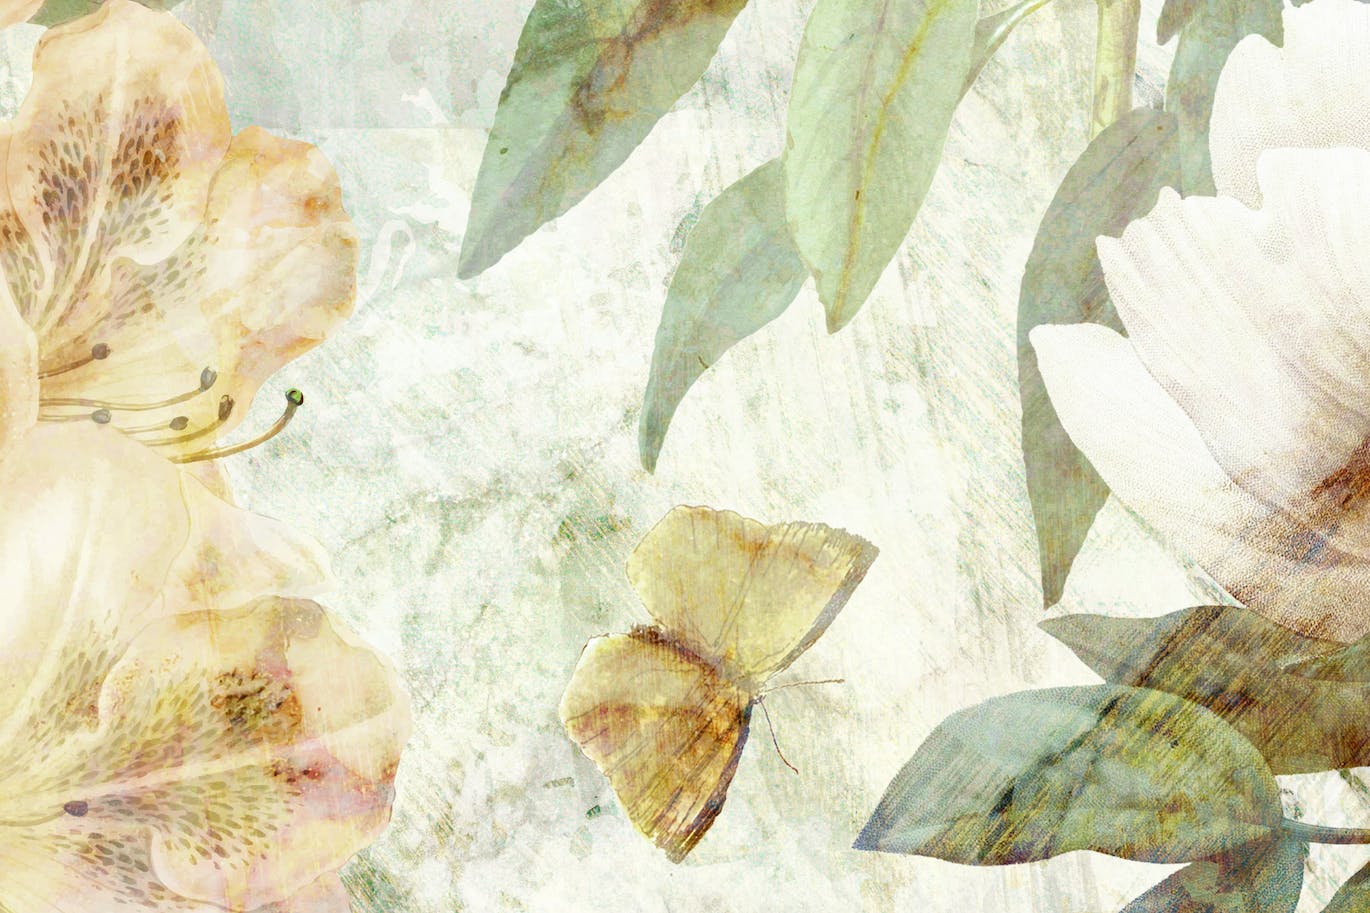 古老壁画花卉图案素材 Old Fresco Flowers 图片素材 第7张